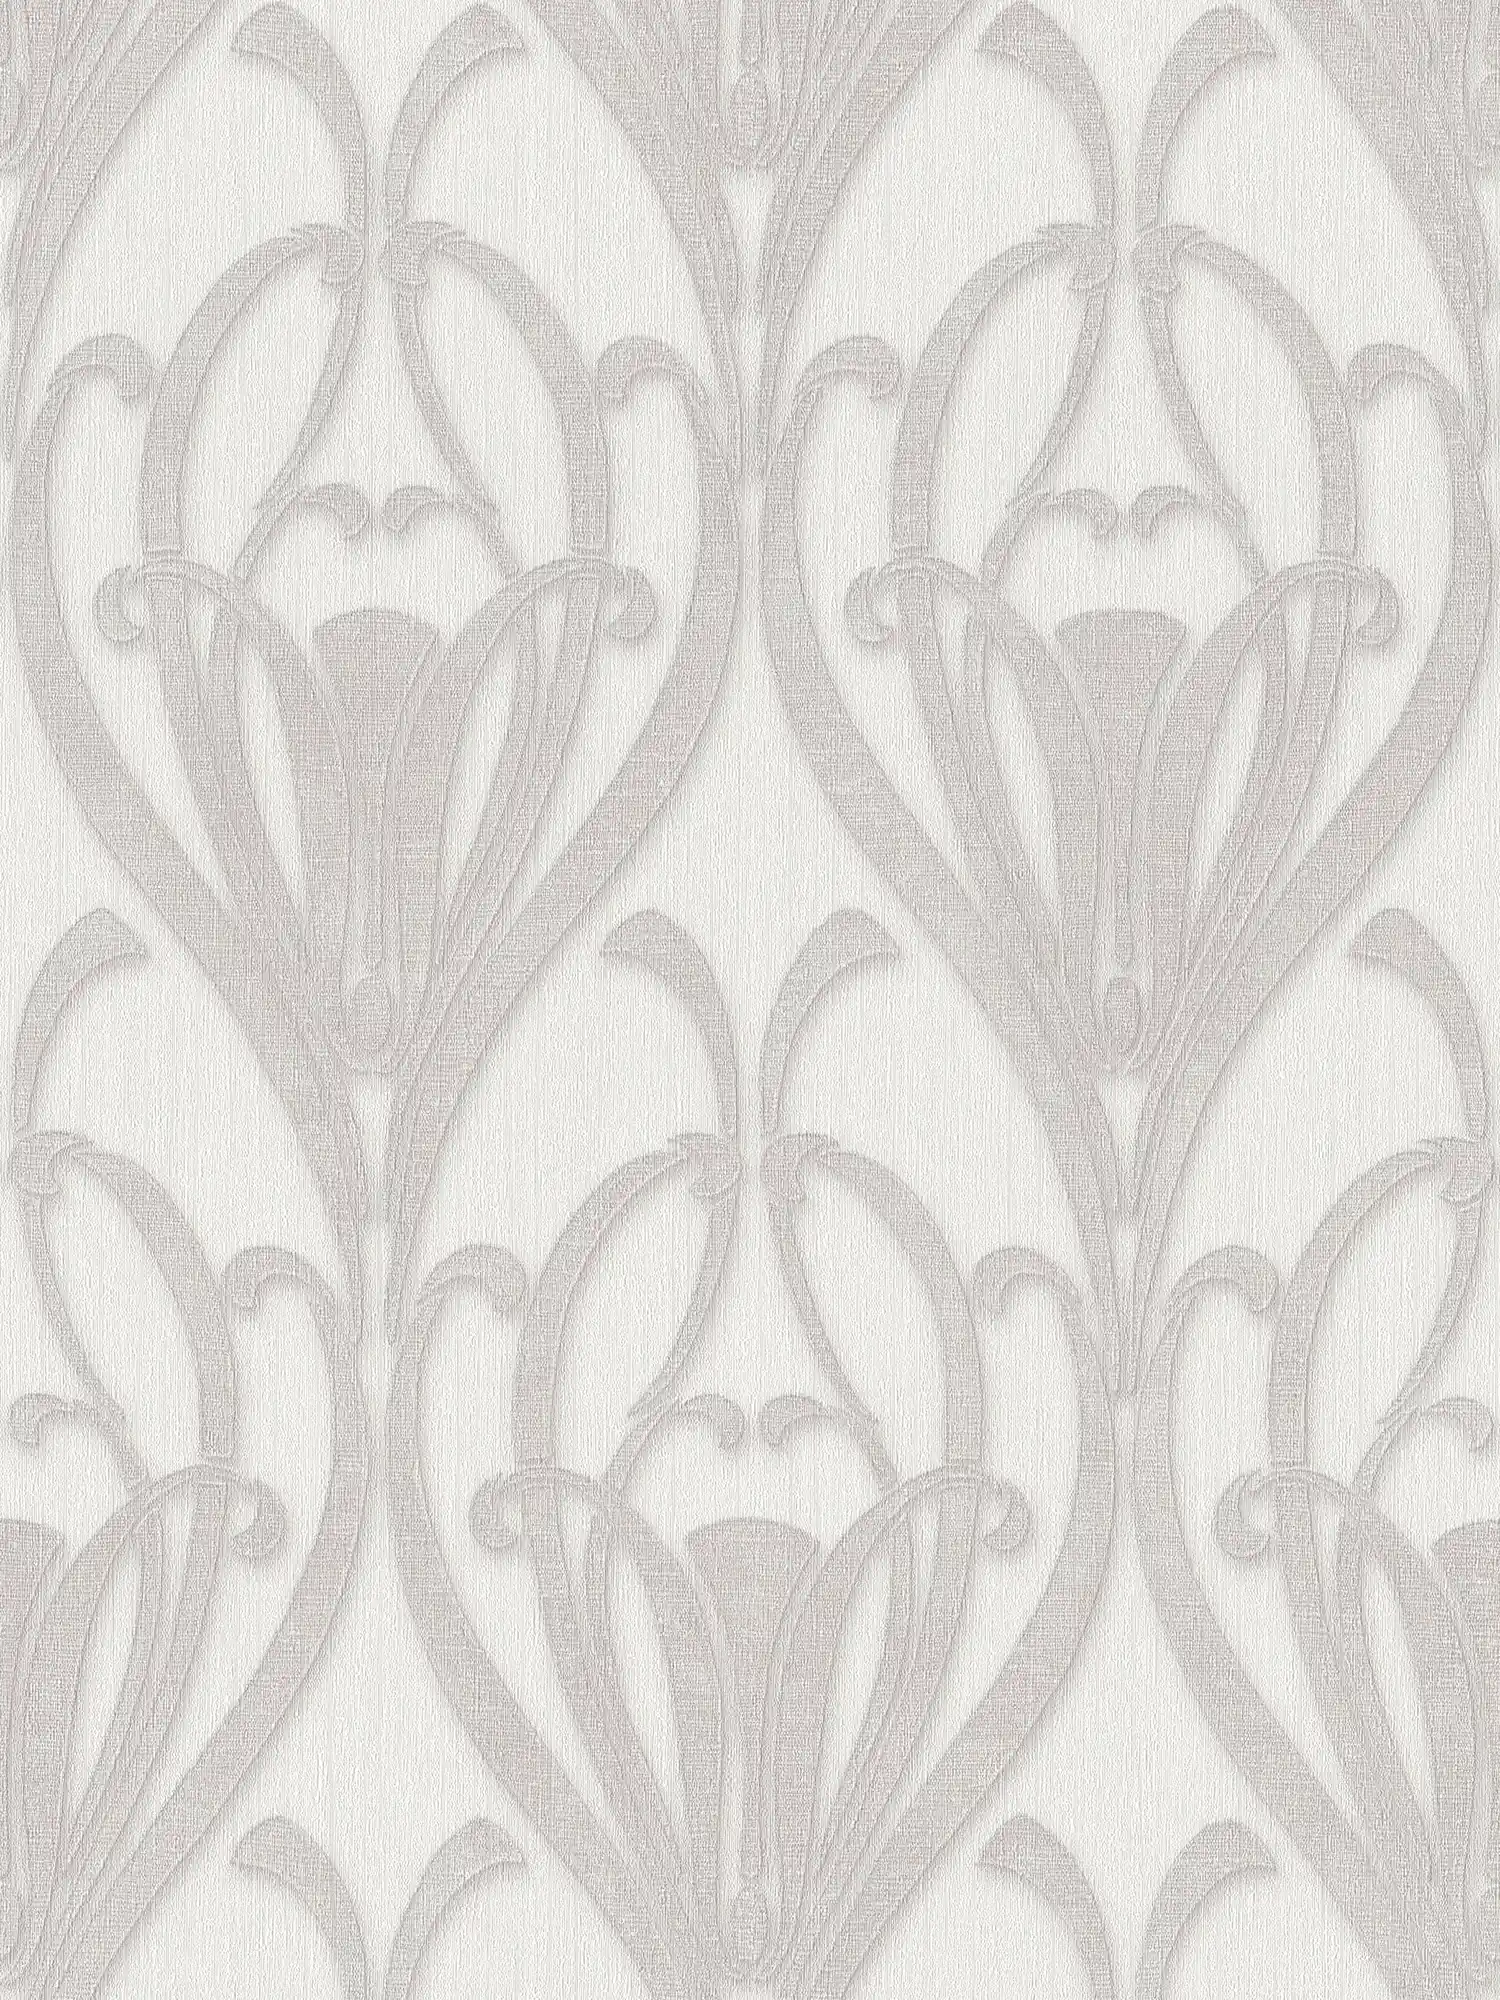         Ornament Tapete mit Art Deco Muster & Textilstruktur
    